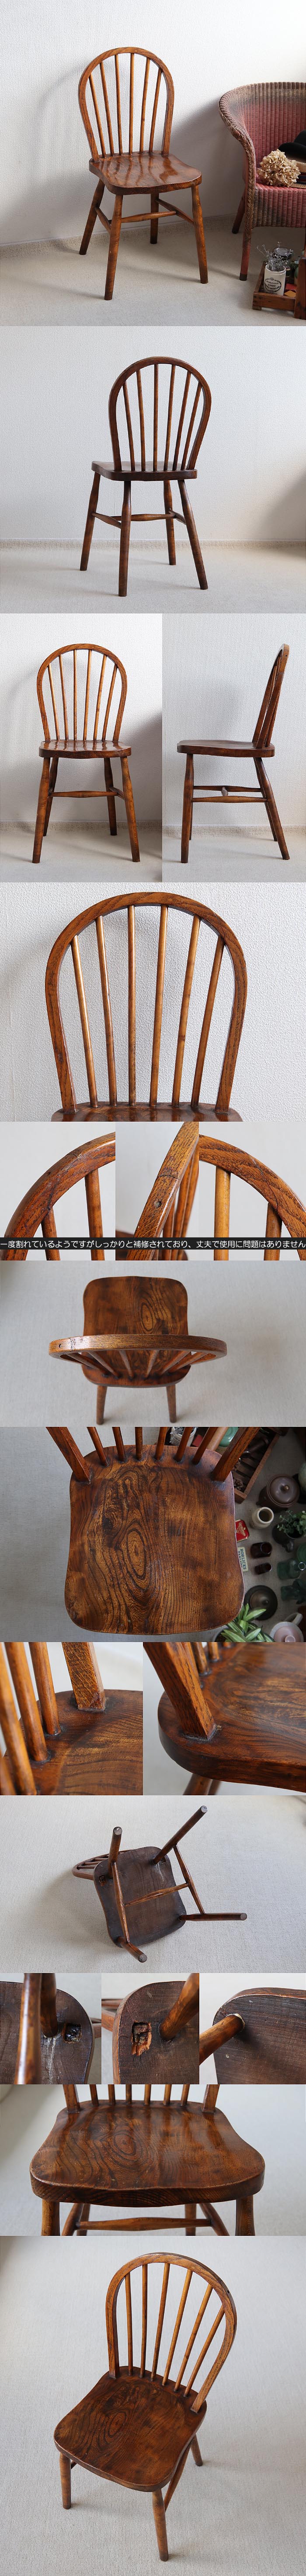 イギリス アンティーク フープバックチェア 木製椅子 ウィンザーチェア 家具「一枚板座面」T-857